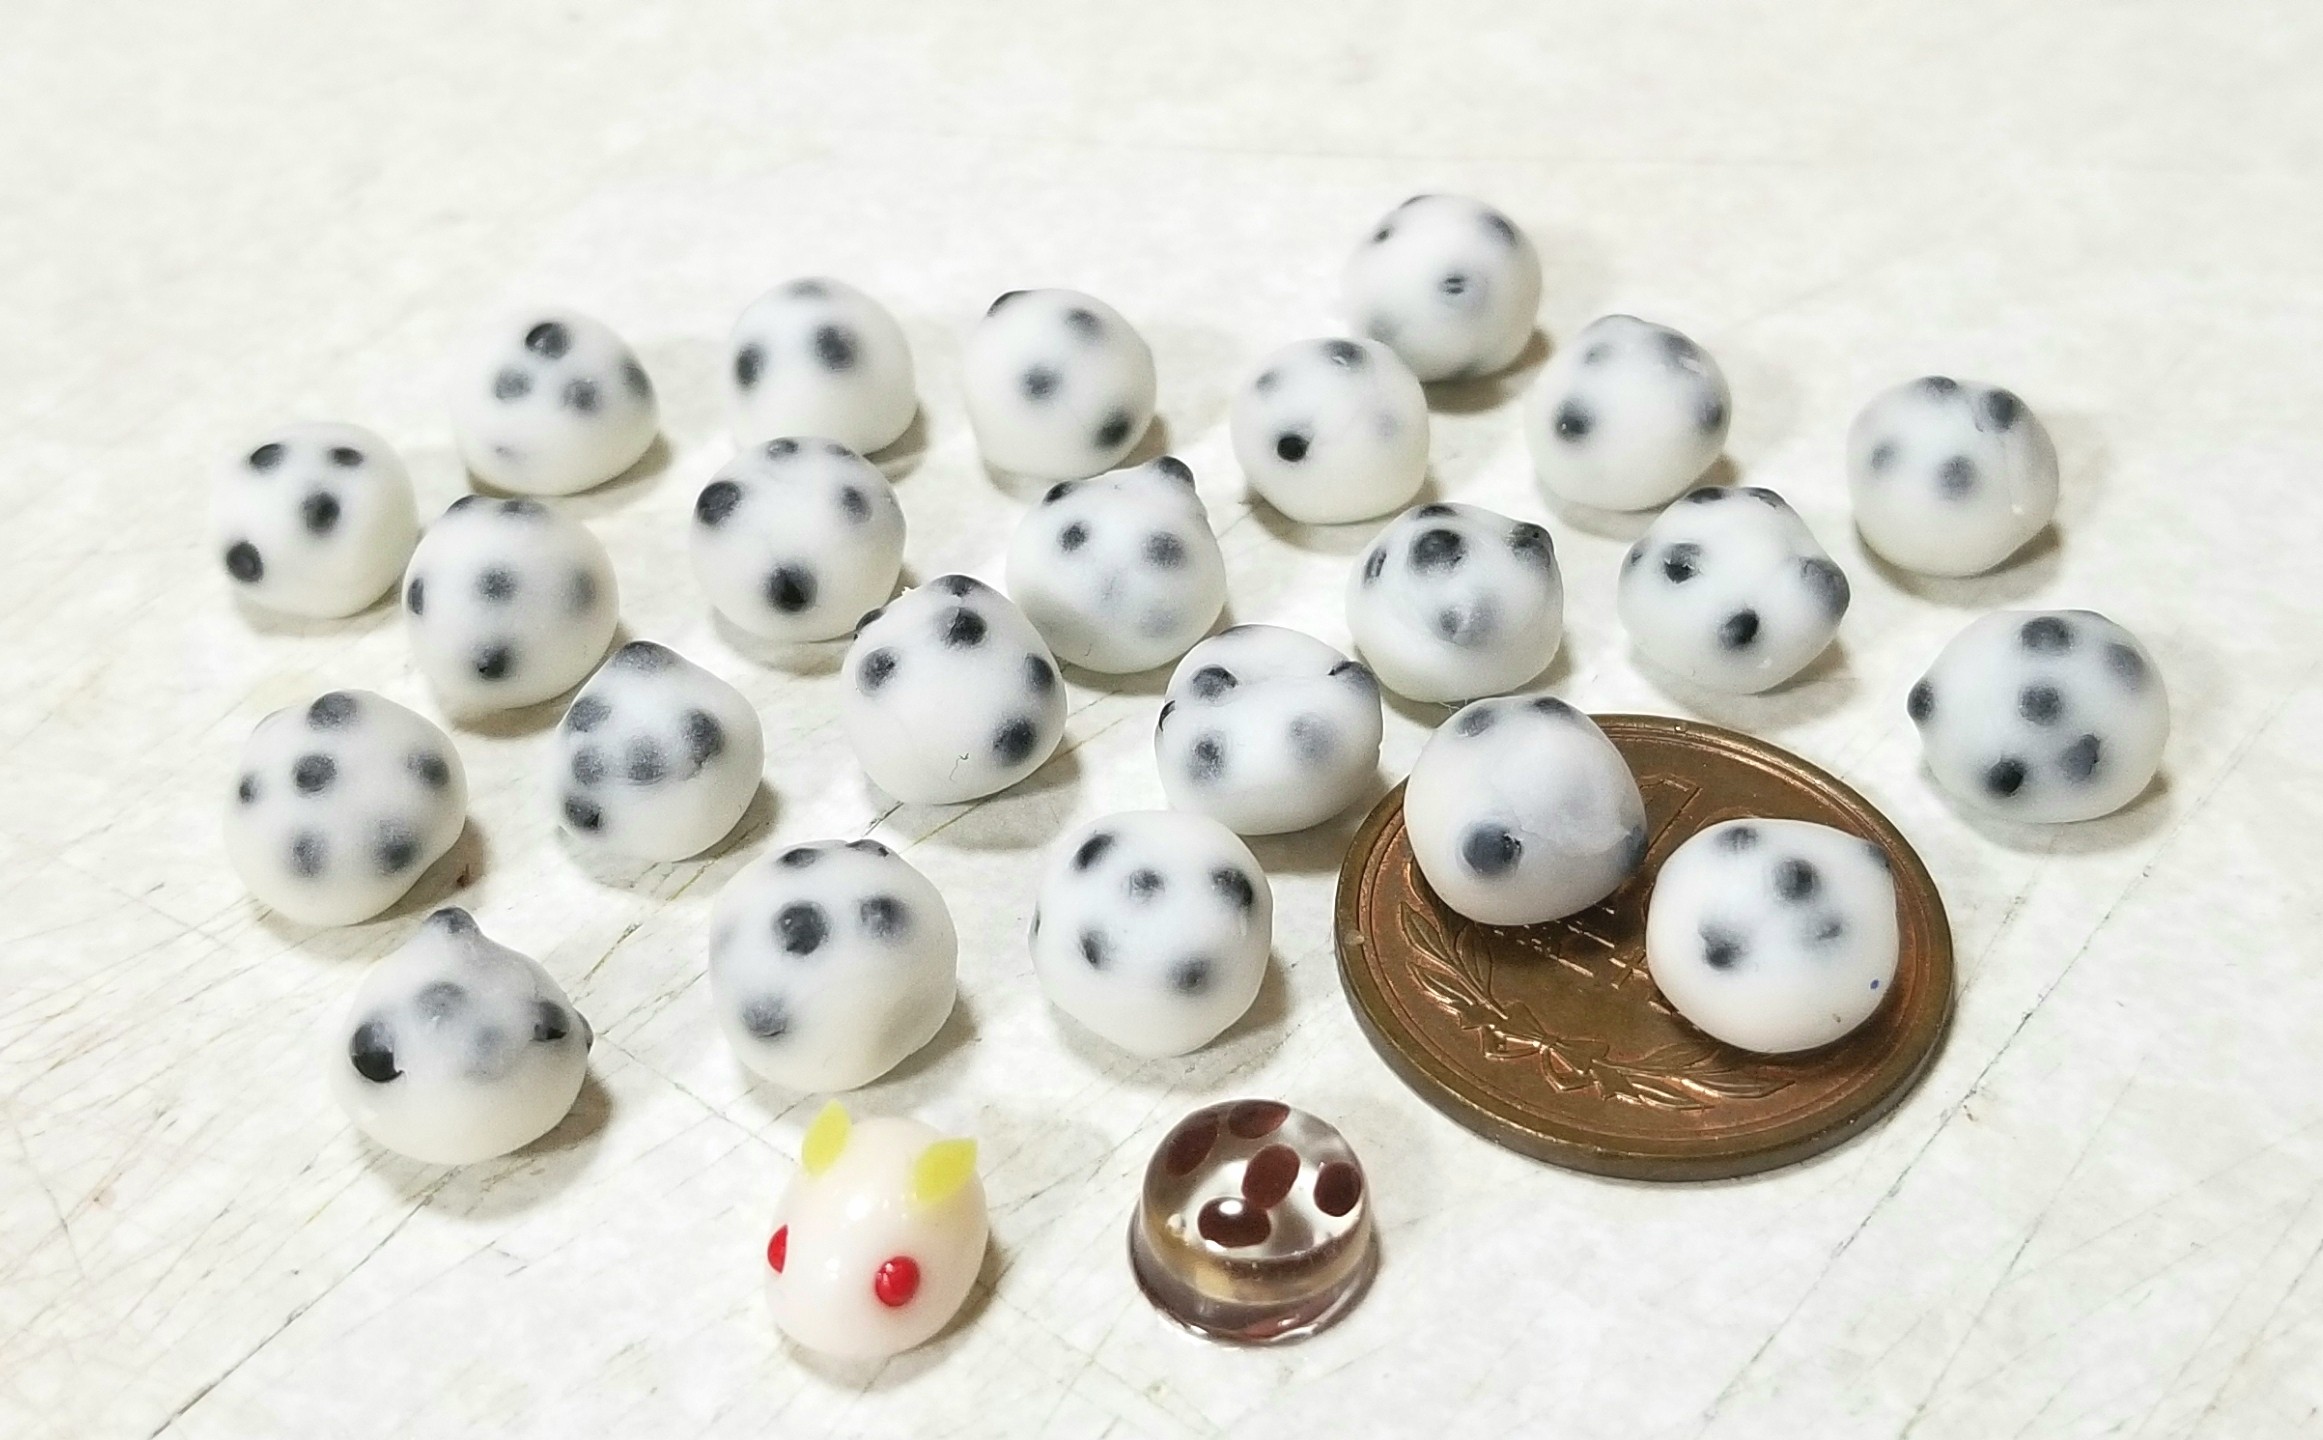 豆大福(和菓子)の作り方・樹脂粘土でミニチュアフードブログ('ー')/✏ : よもぎの幸せ(ミニチュアフード作家)の日常生活